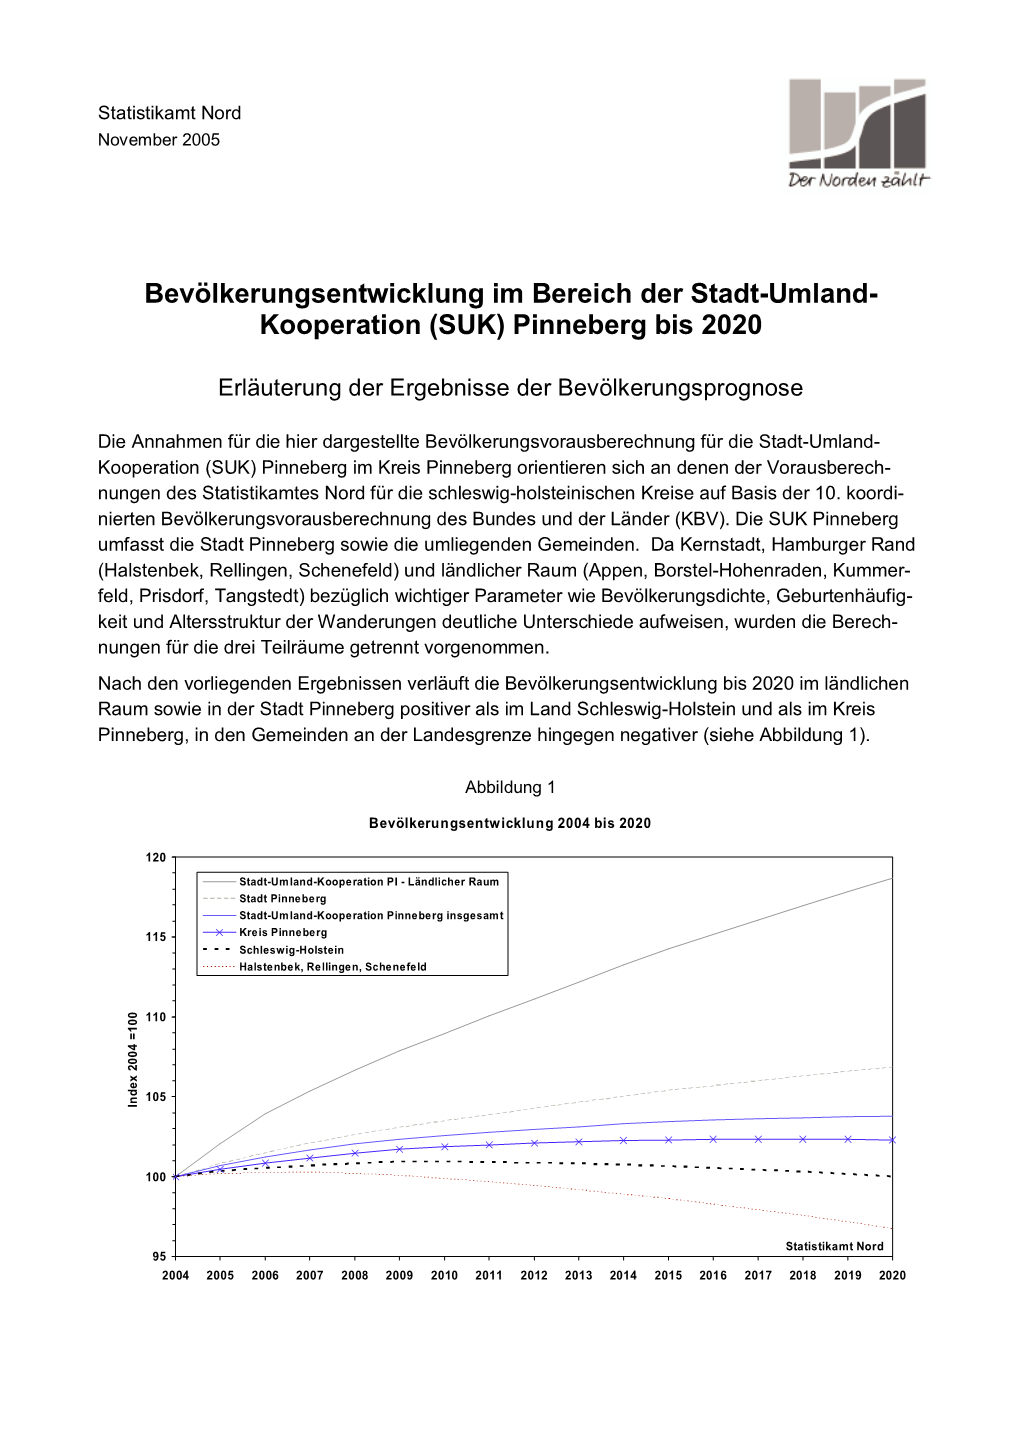 Bevölkerungsentwicklung Im Bereich Der Stadt-Umland- Kooperation (SUK) Pinneberg Bis 2020